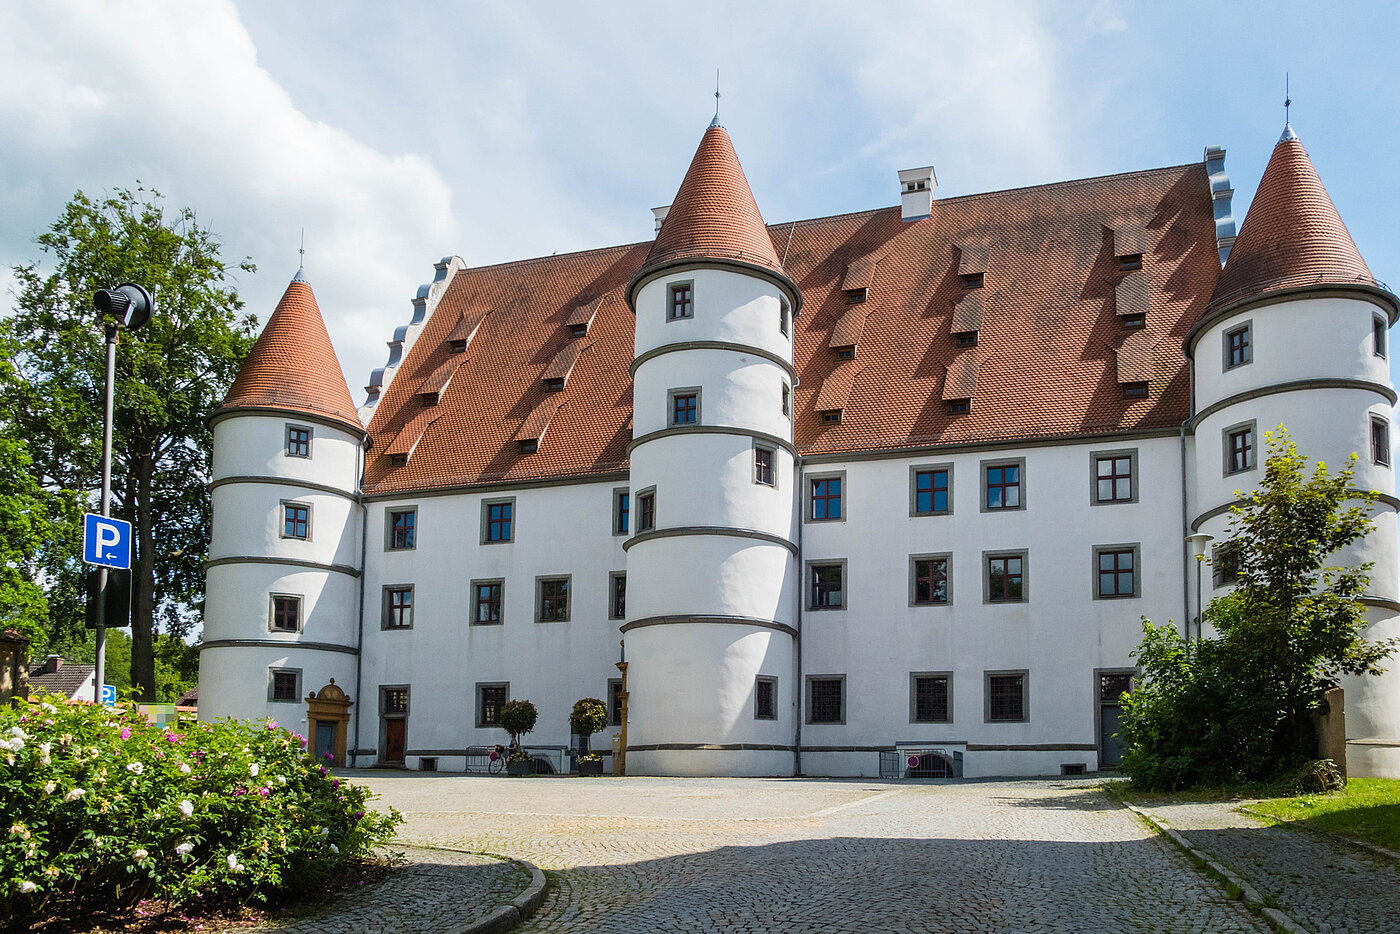 Bild: Das Schloss in Vohenstrauß.